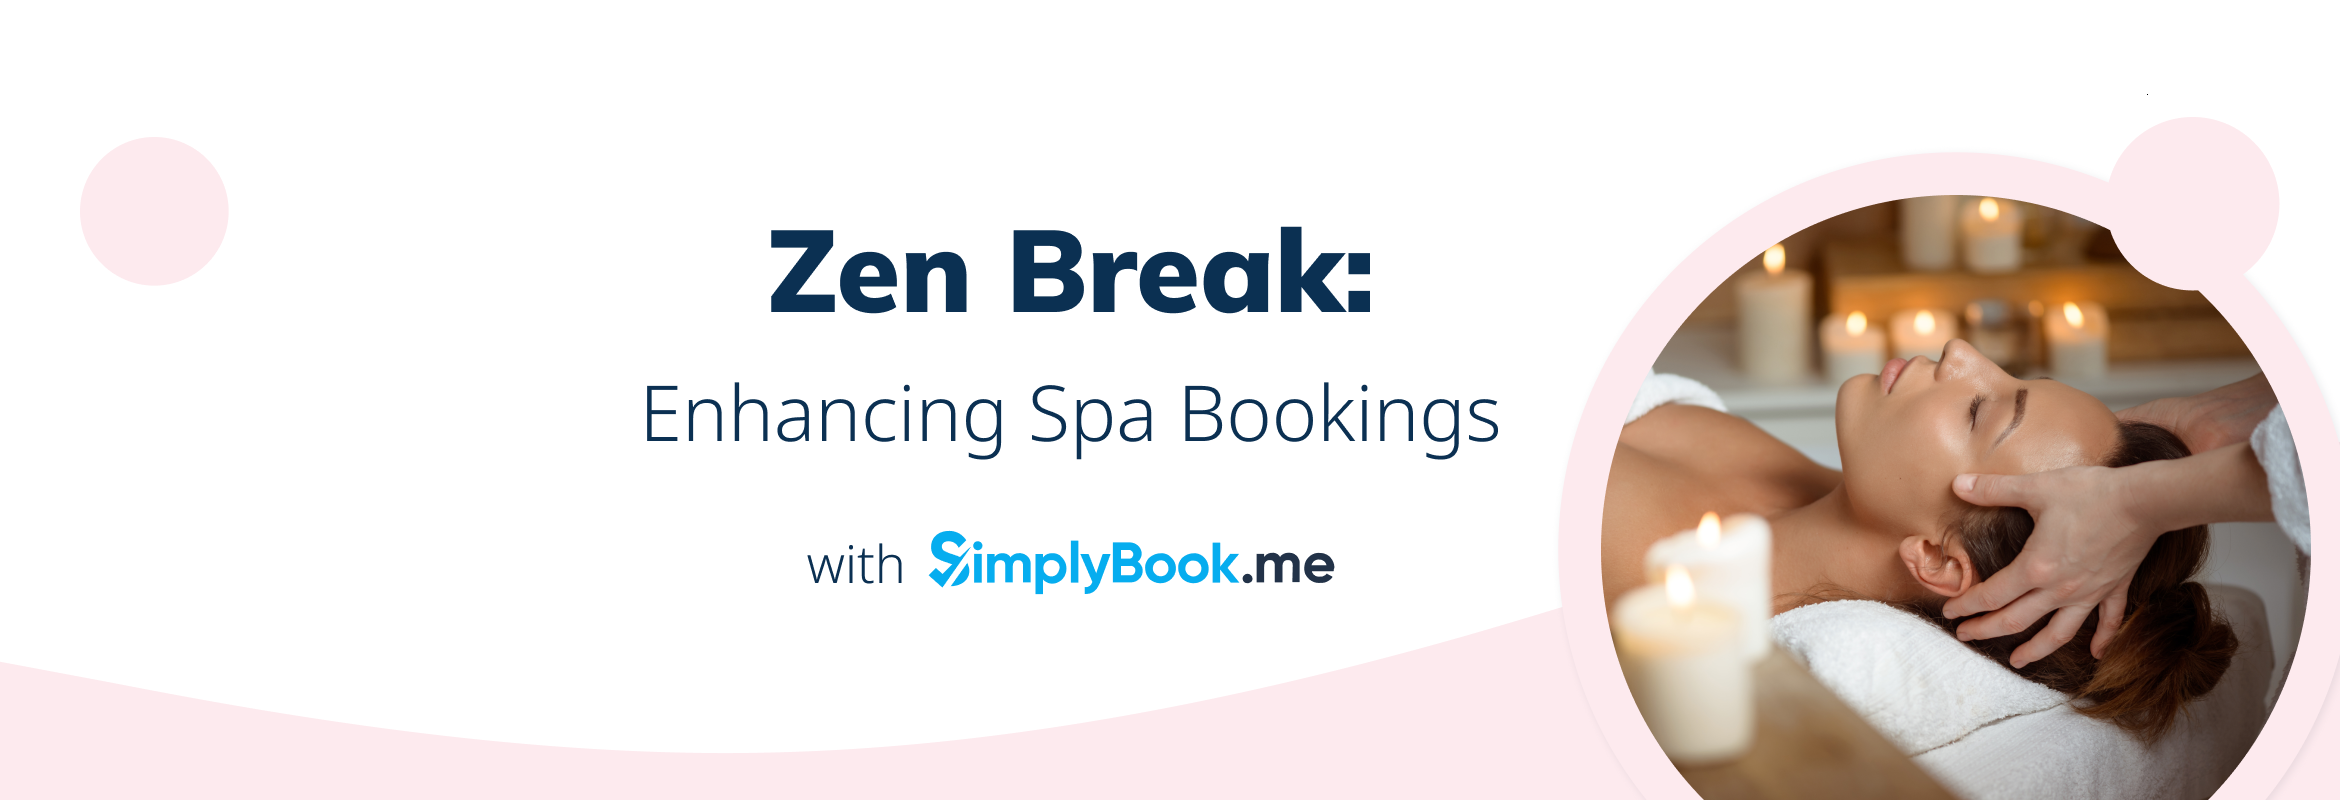 zen break spa